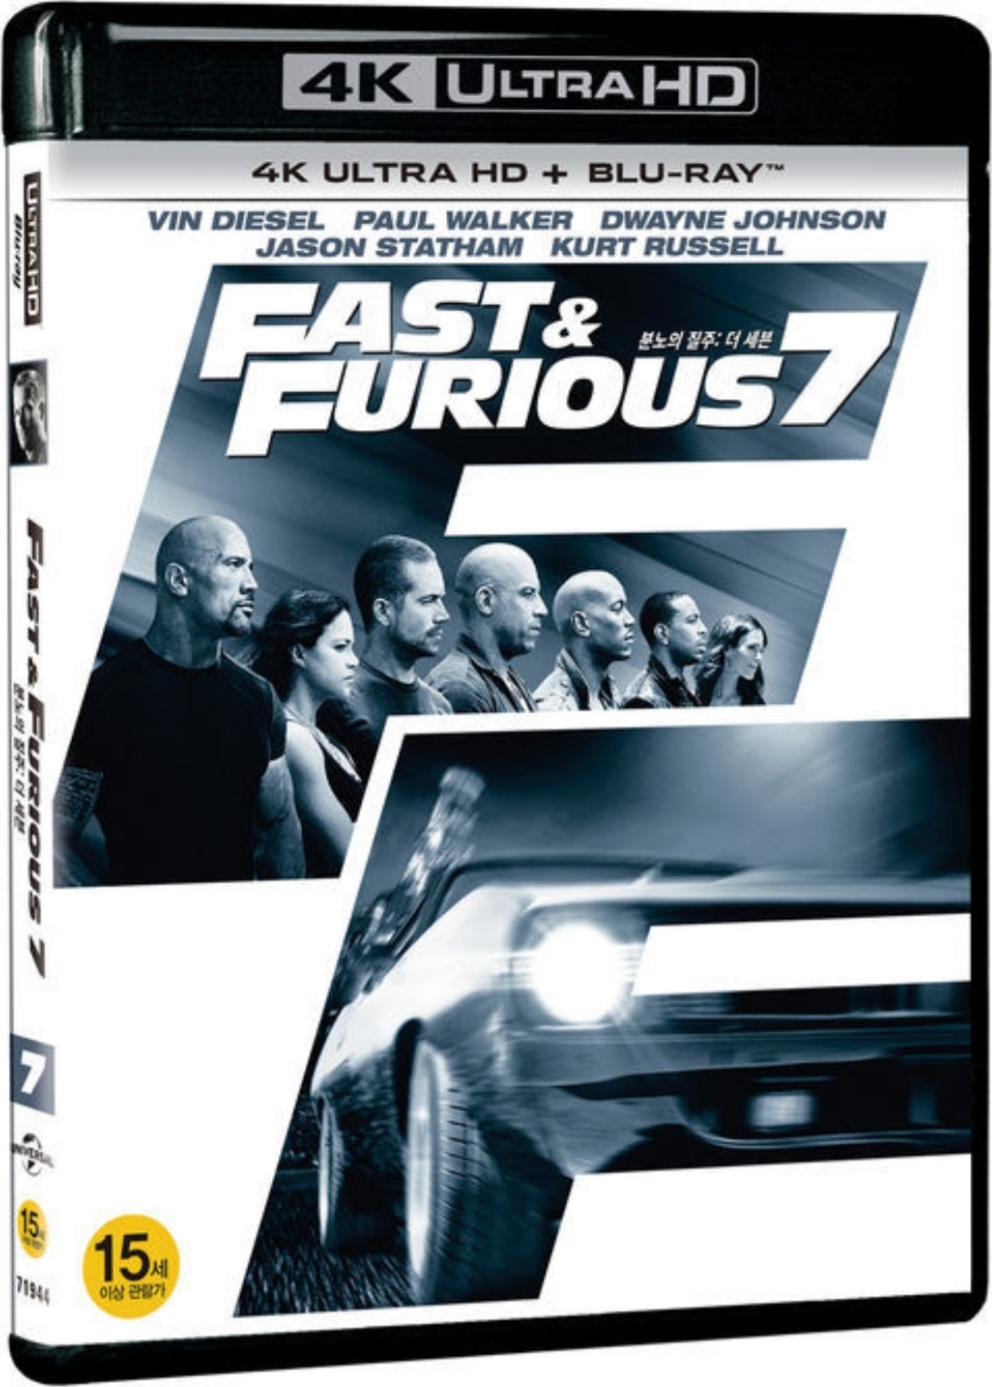 速度与激情7 [UHDDIY 剧场版+加长版 国语次世代 国配简繁英特效] Fast and Furious 7 2015 2in1 ULTRAHD Blu-ray 2160p HEVC DTS-HD HR 7.1-sGnb@CHDBits [63.29 GB ]